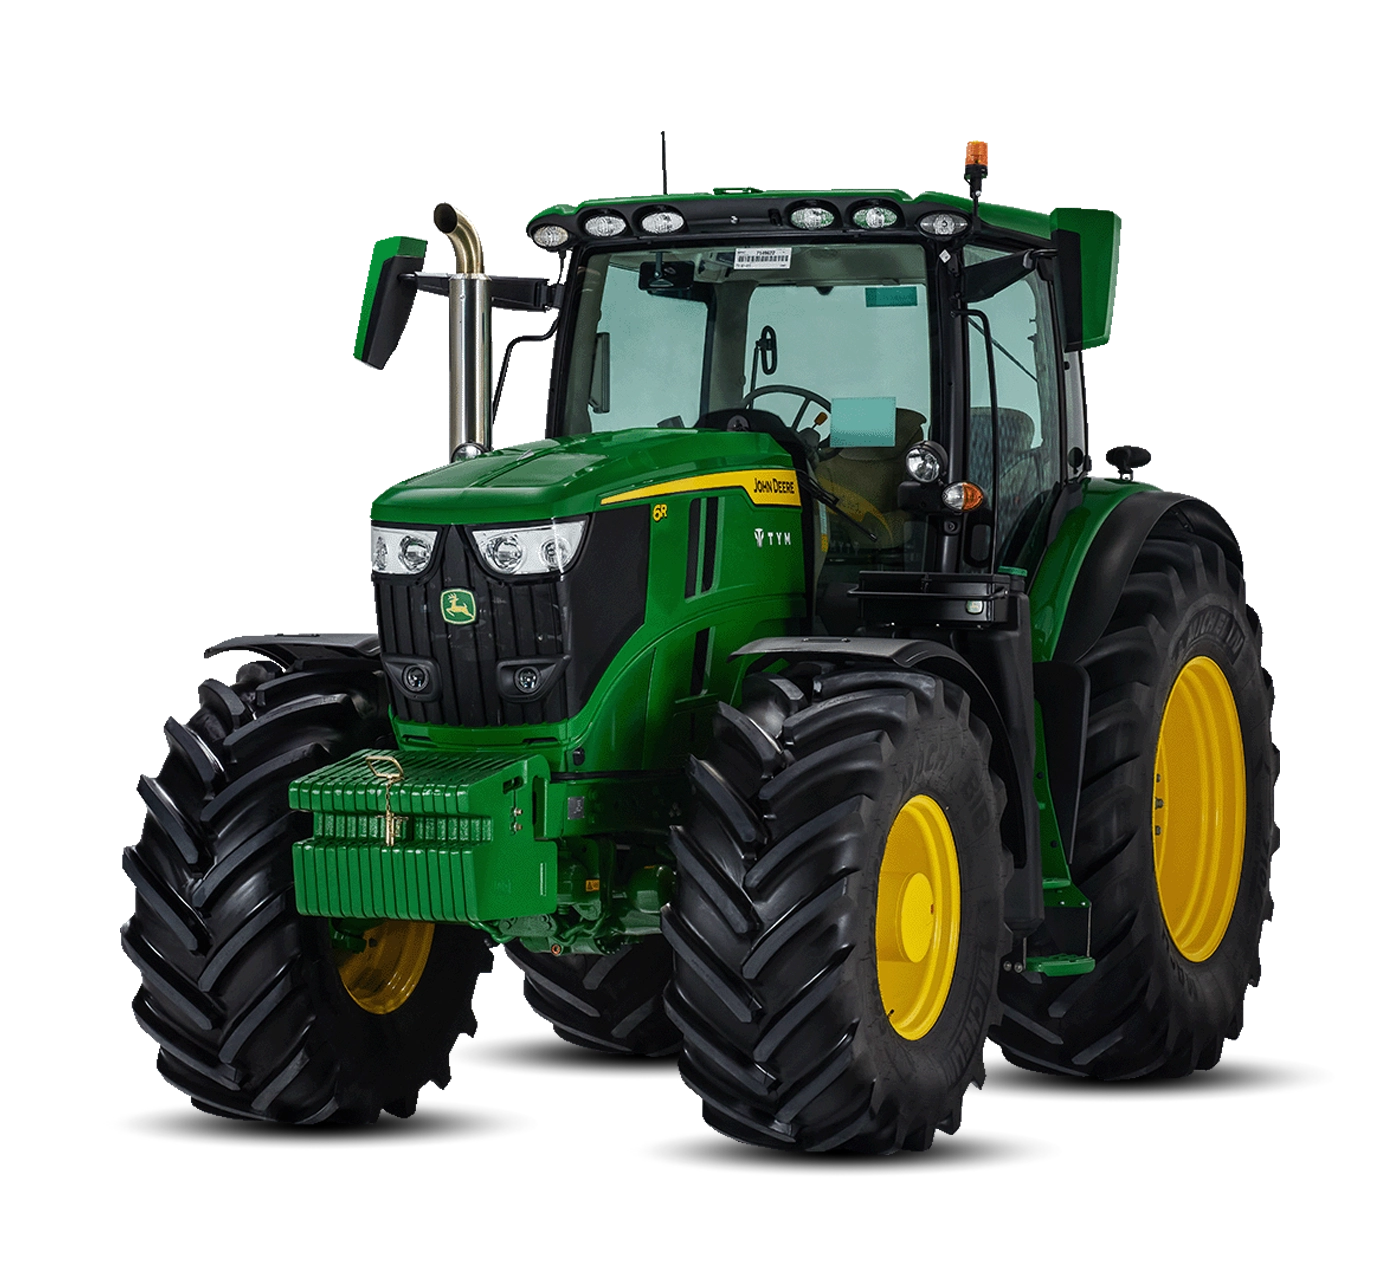 John Deere Tractors, 6 Series Utility Tractors